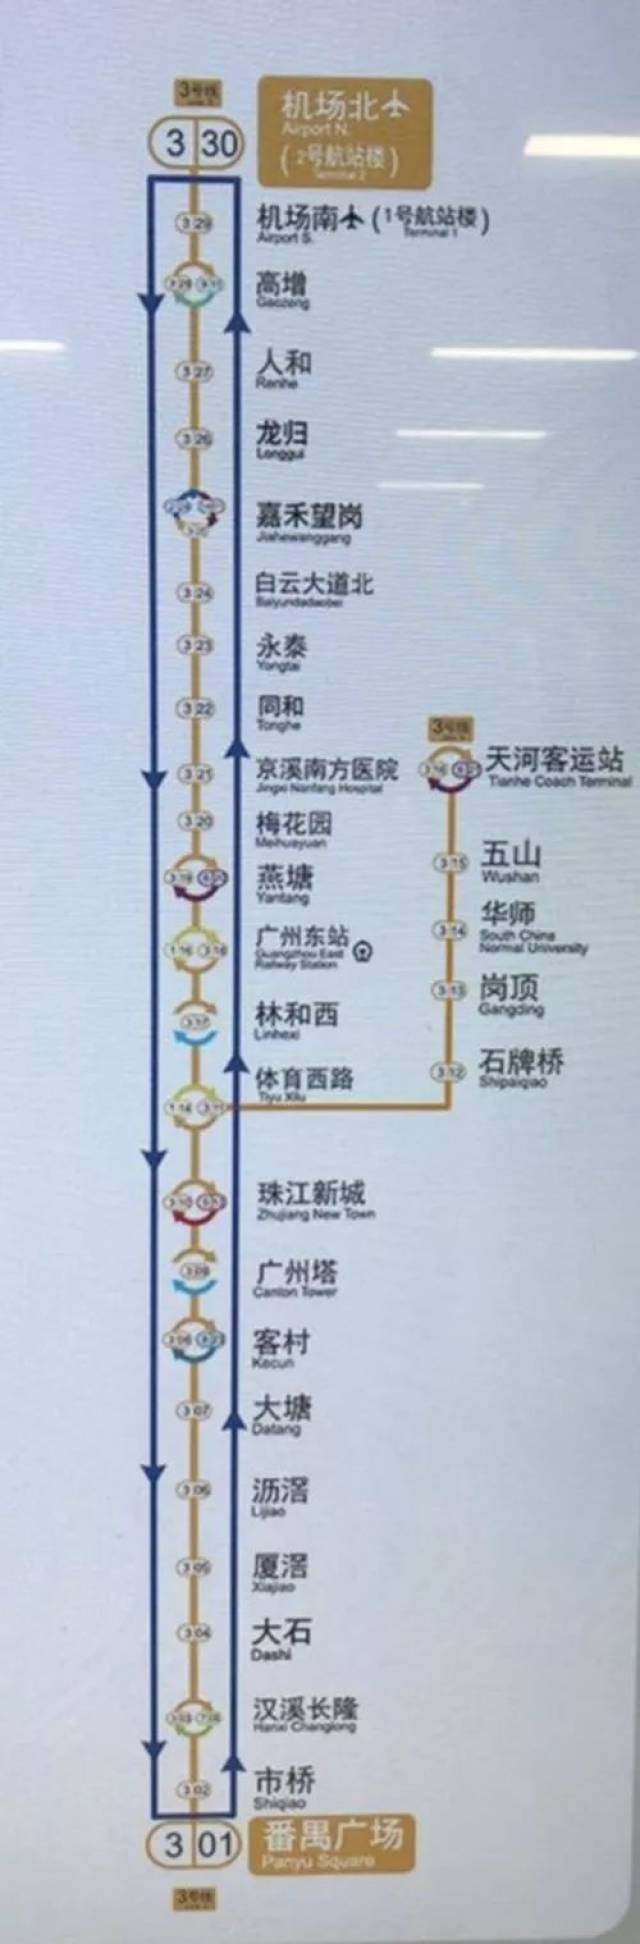 地铁决定延长试行时间,从1月21日起,三号线在天河客运站至番禺广场